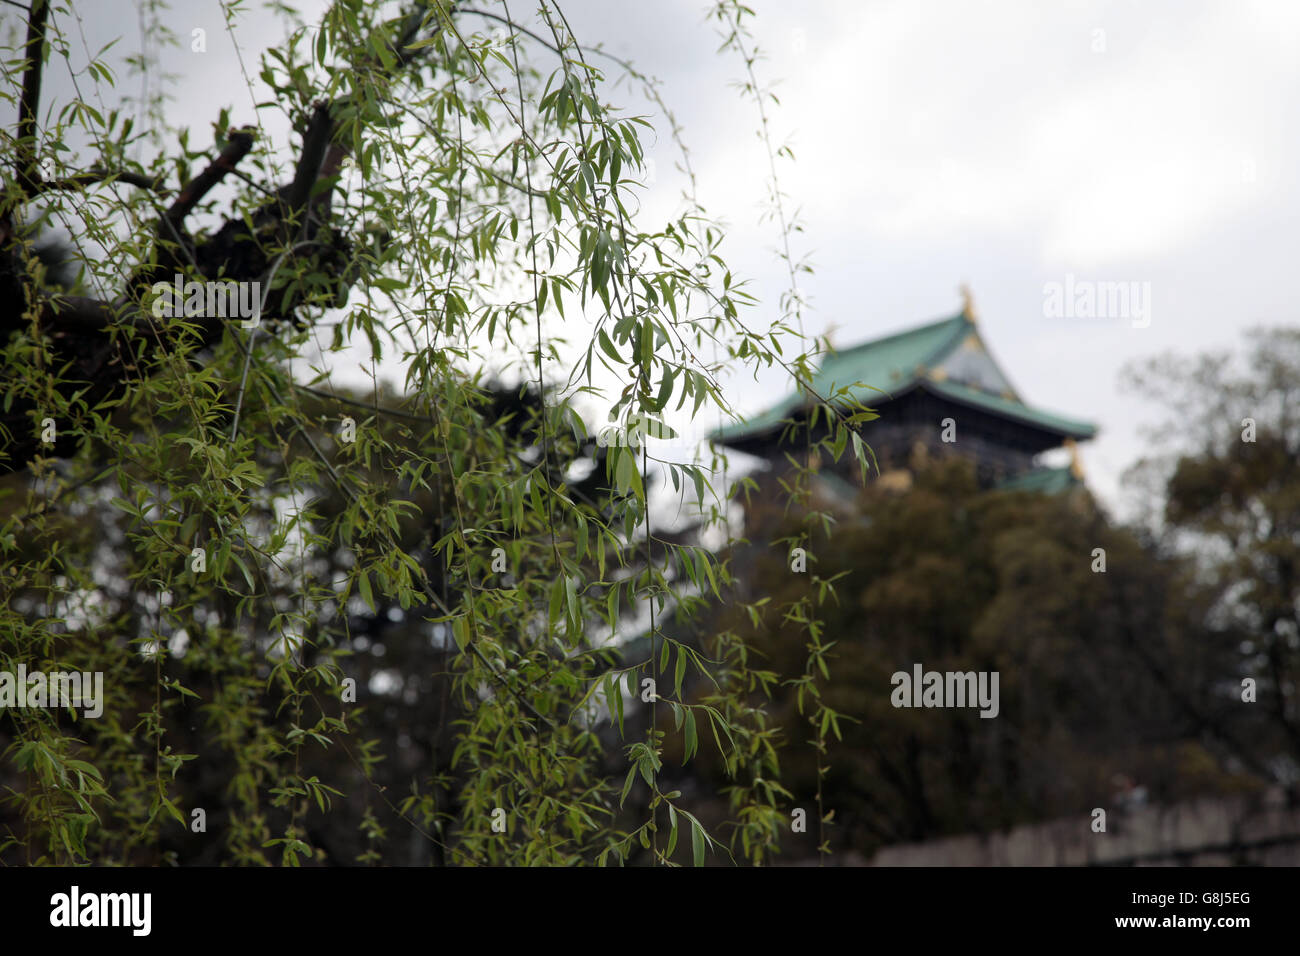 Es una foto del castillo de Osaka en Japón durante la temporada de primavera. Vemos un sauce llorón en primer plano Foto de stock